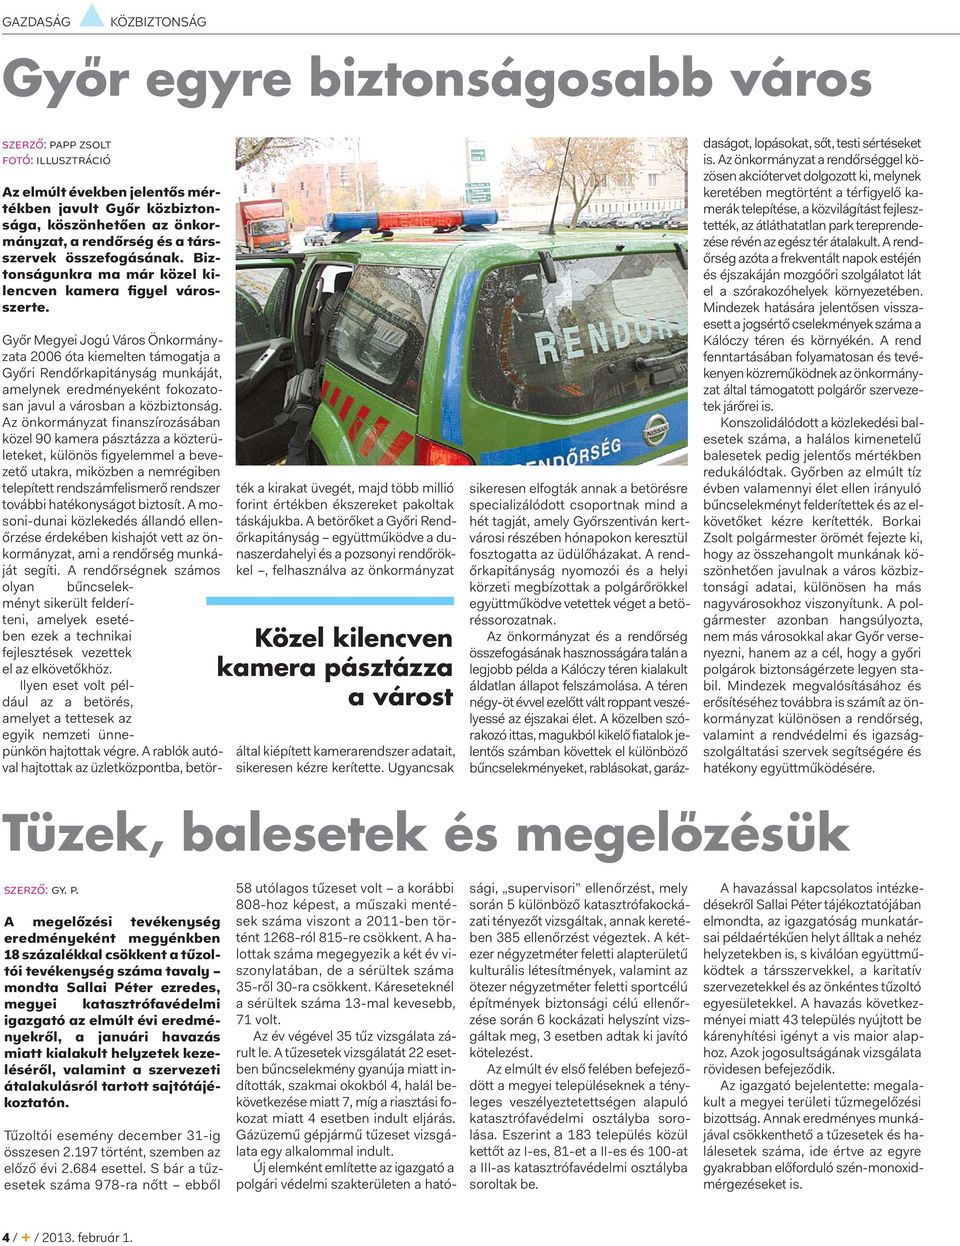 Győr Megyei Jogú Város Önkormányzata 2006 óta kiemelten támogatja a Győri Rendőrkapitányság munkáját, amelynek eredményeként fokozatosan javul a városban a közbiztonság.